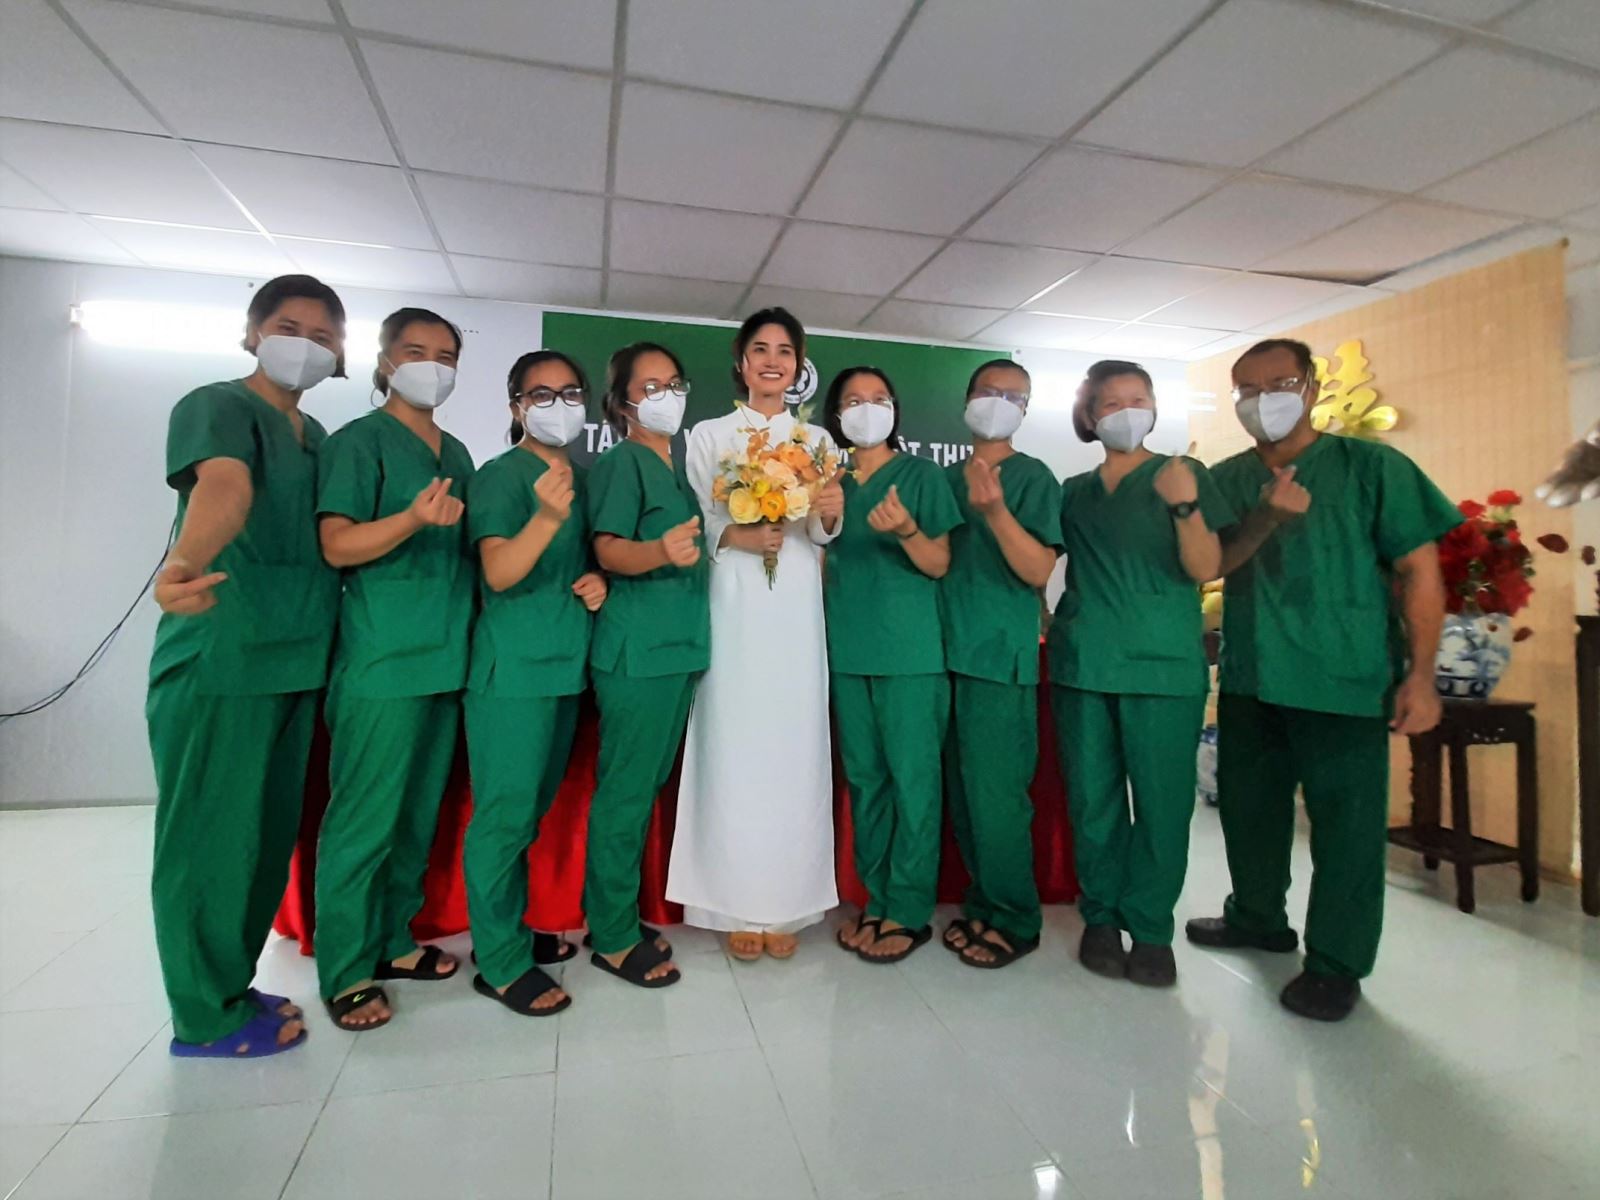 Nhật ký tu sĩ từ bệnh viện Covid-19: “Đám cưới trong bệnh viện dã chiến”